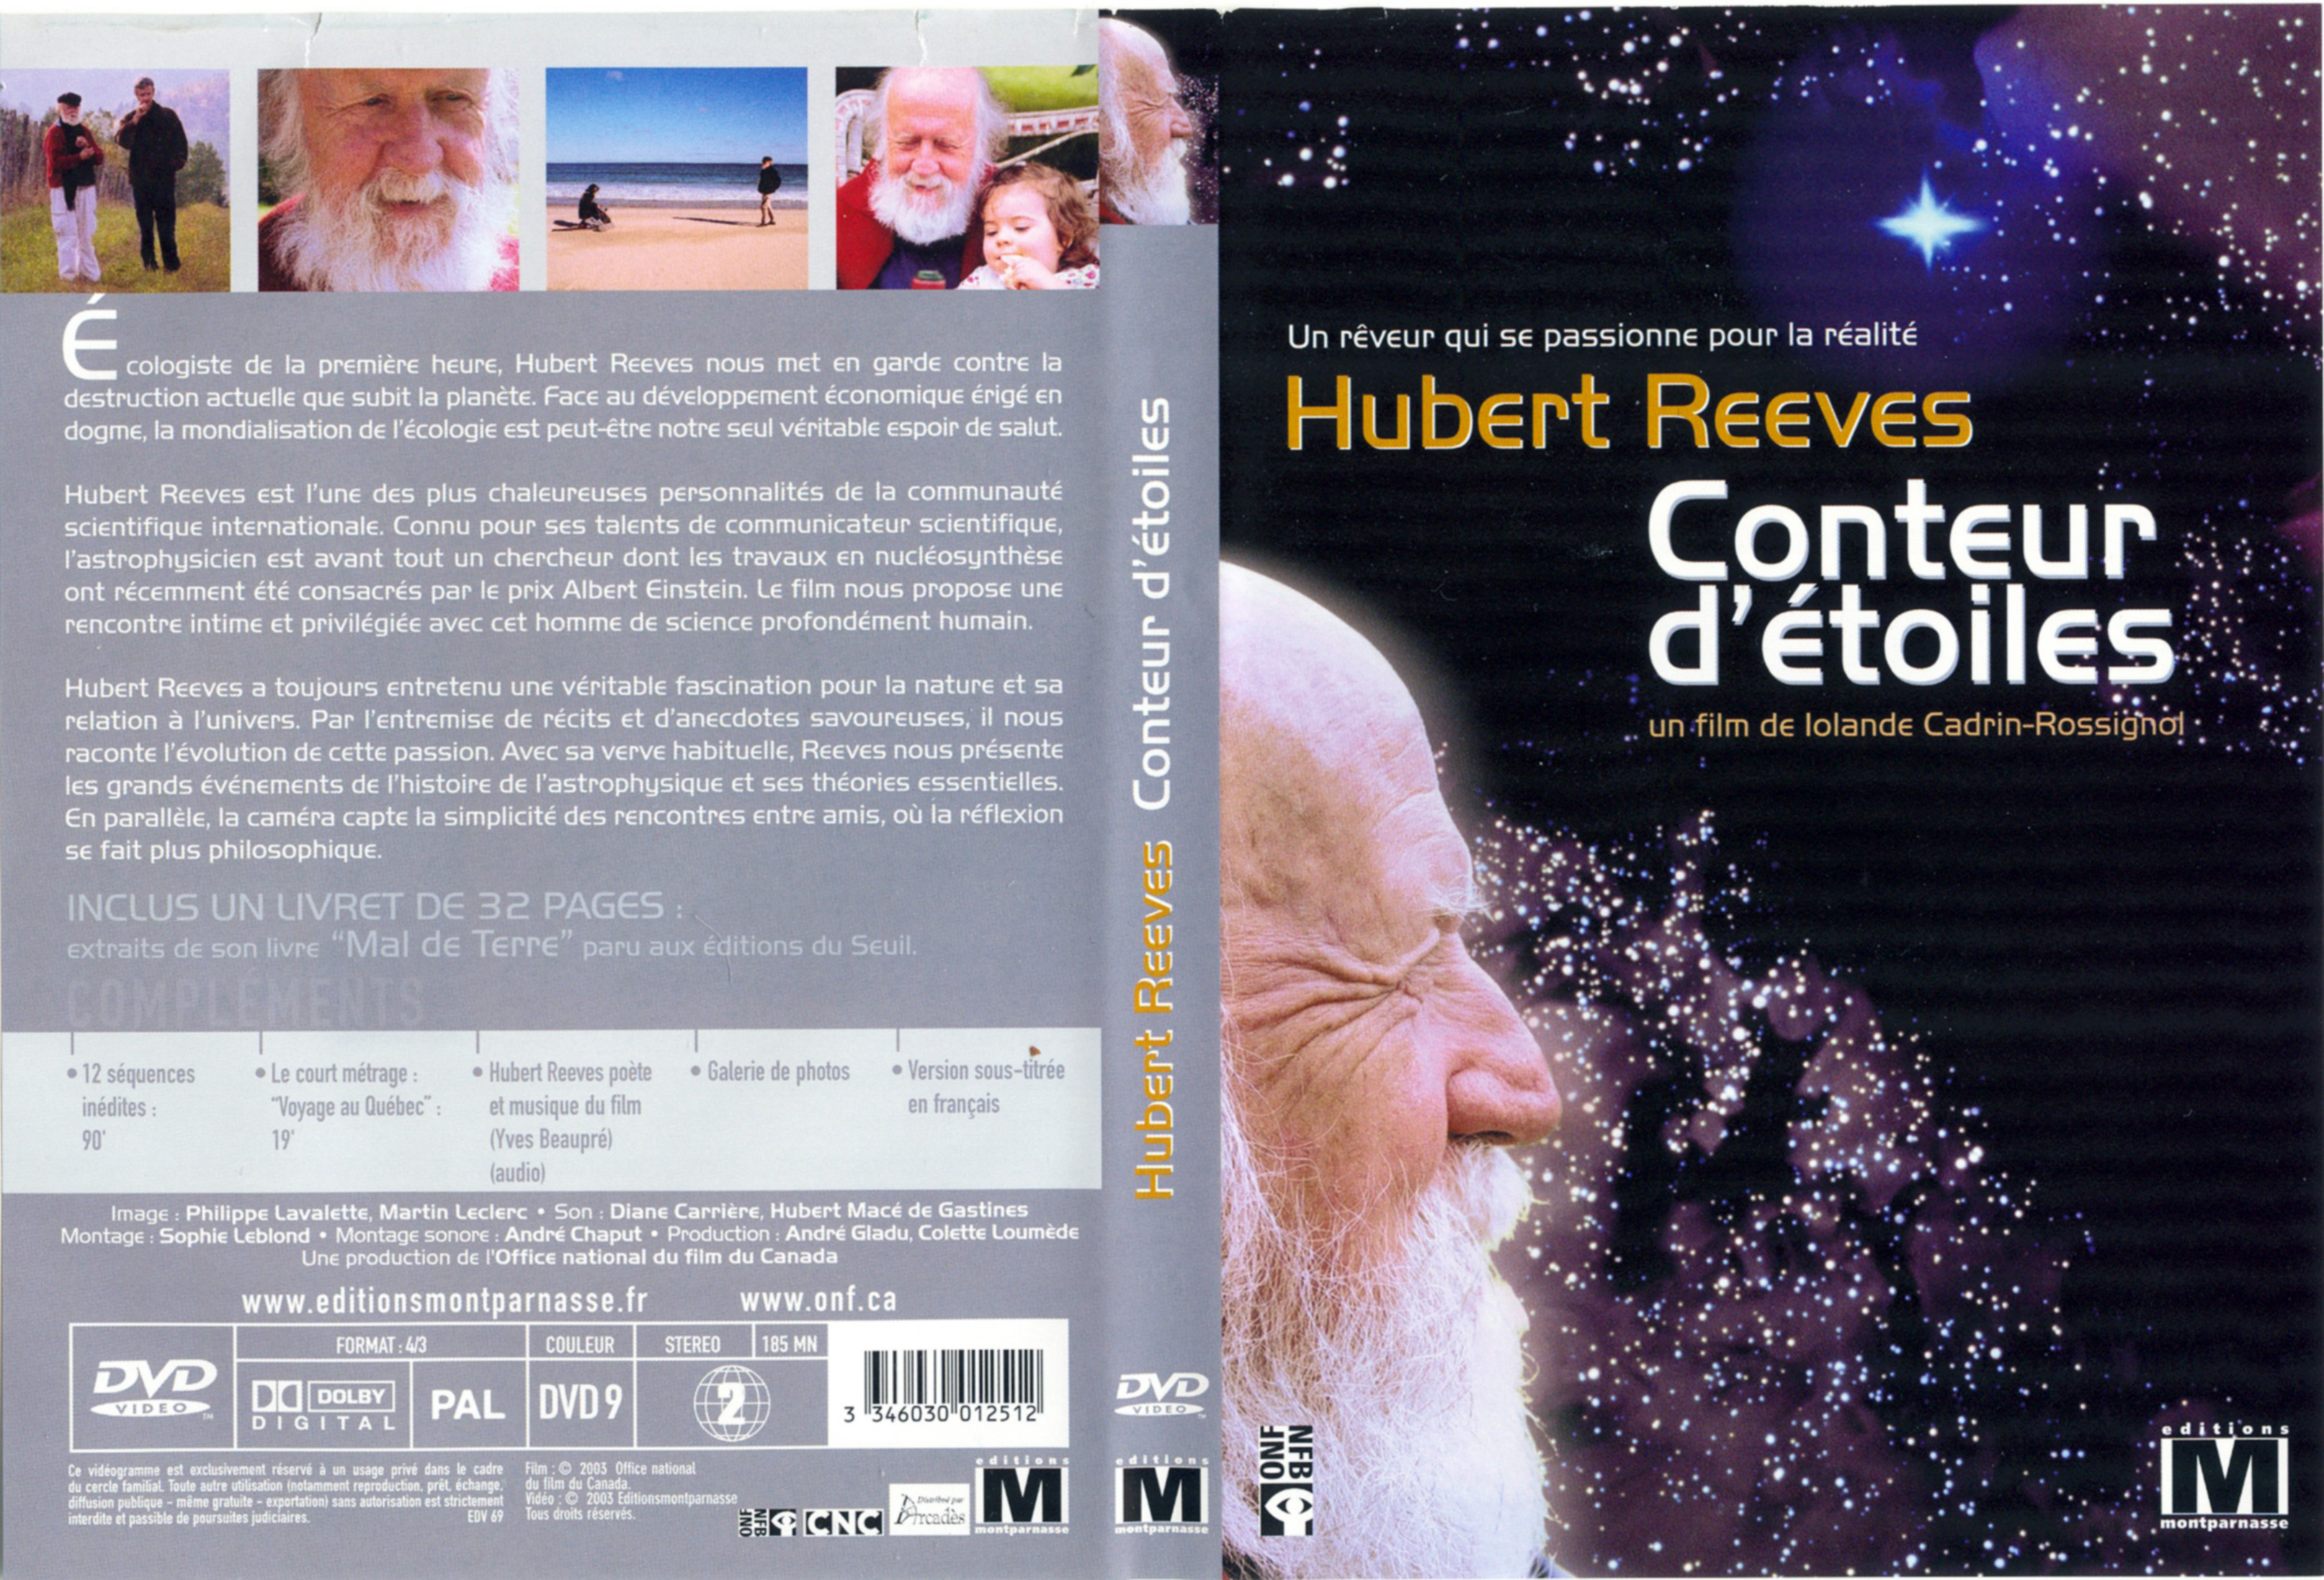 Jaquette DVD Hubert Reeves Conteur d